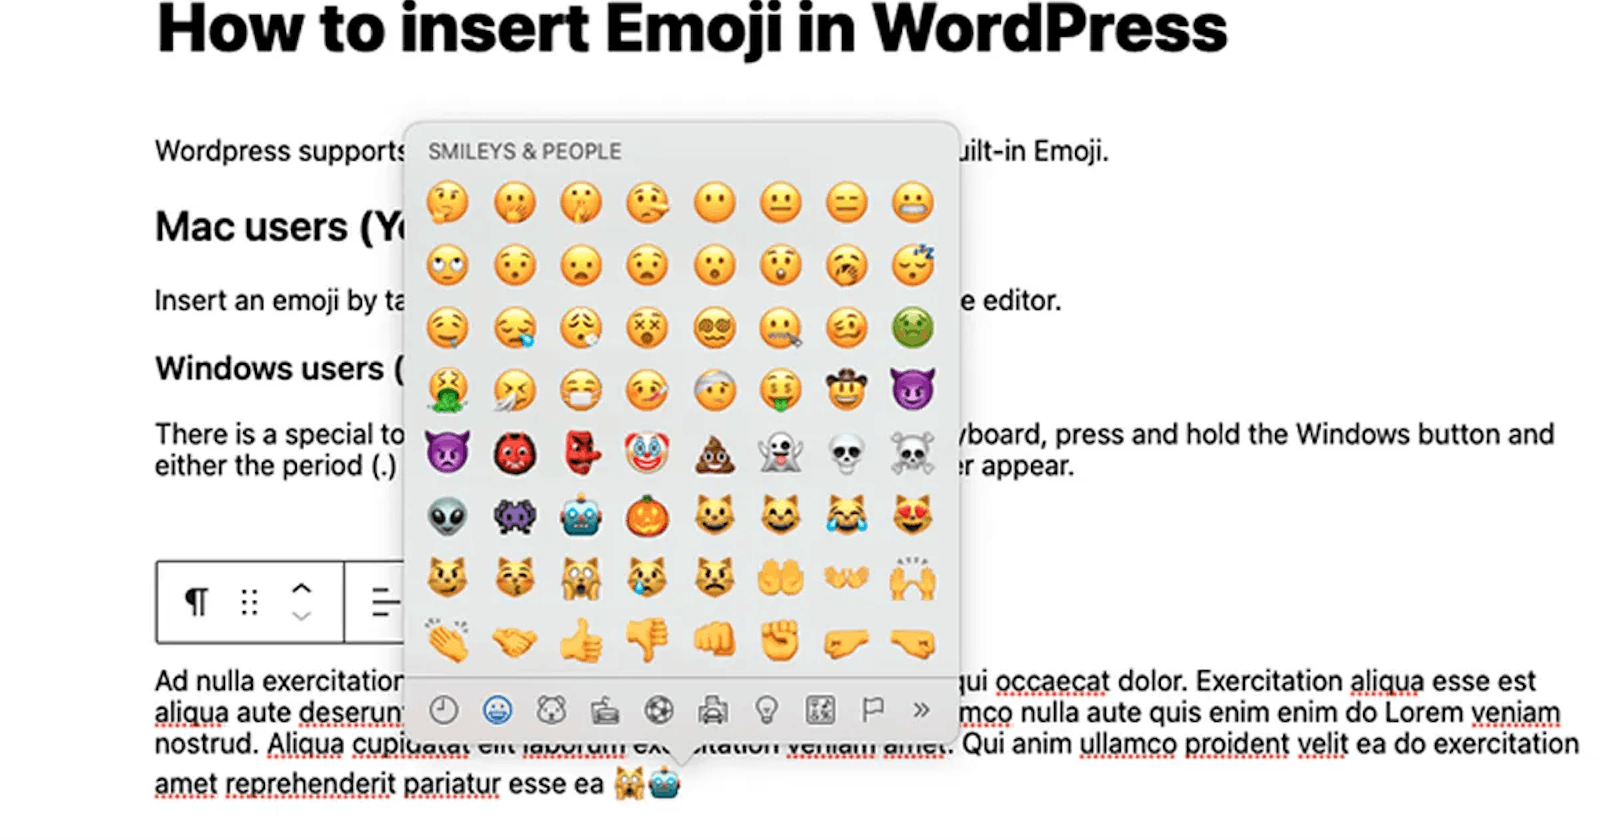 WordPress: How to insert Emoji